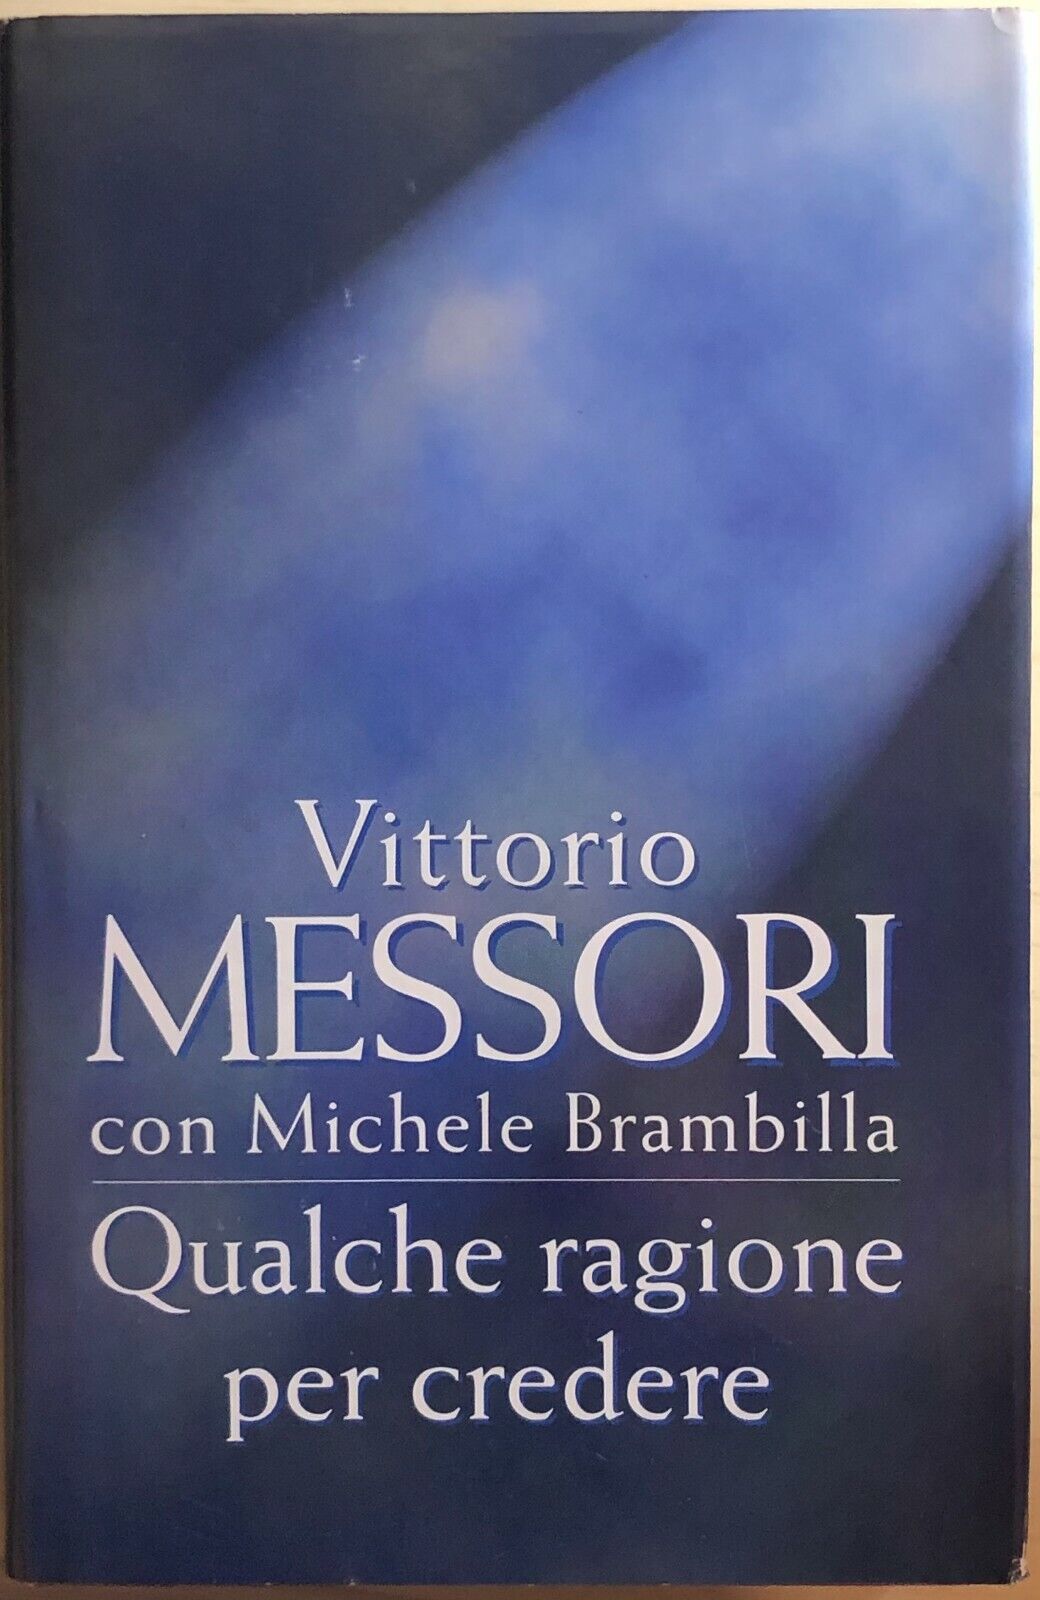 Qualche ragione per credere di Vittorio Messori Con Michele Brambilla, 1997, Edi